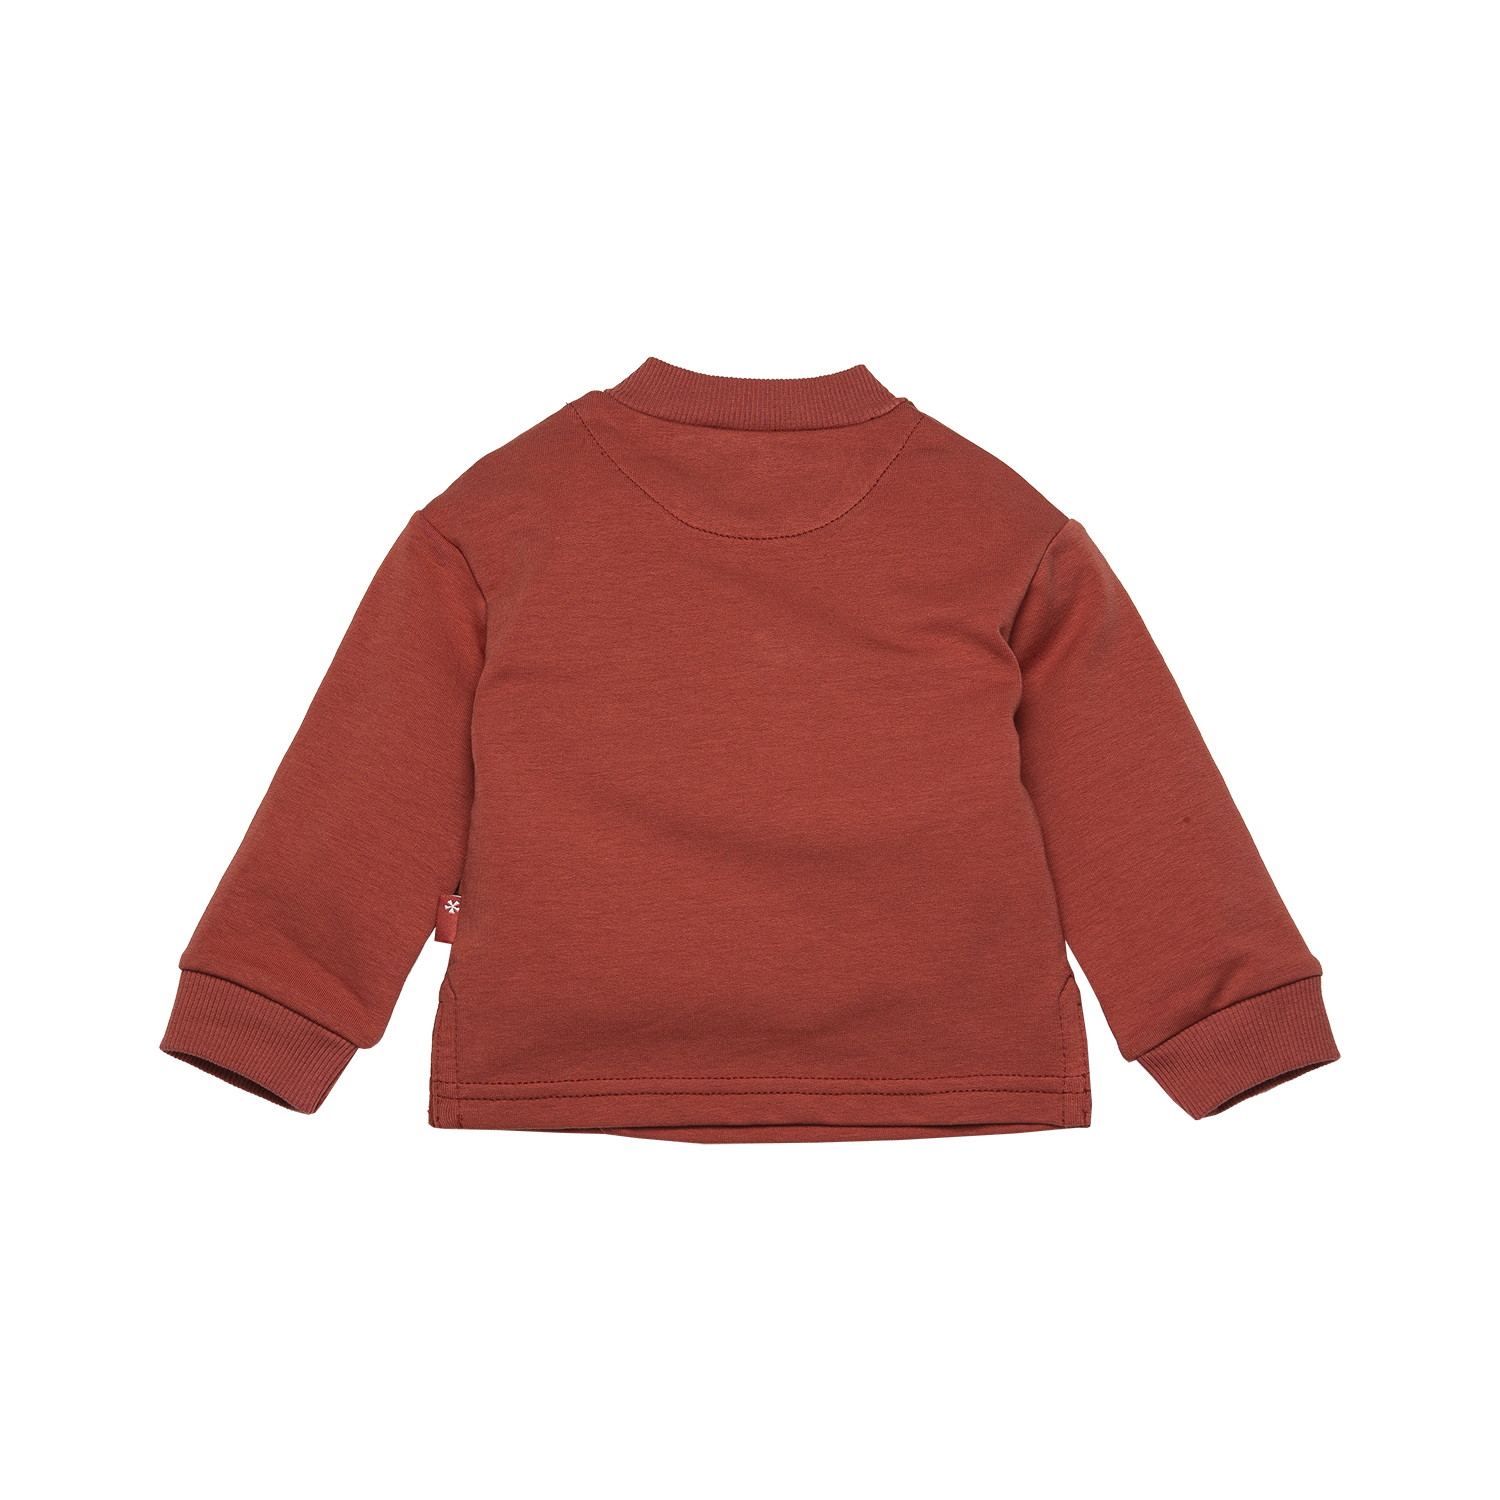 Jongens Sweater Diagonal van B.E.S.S. in de kleur Hot sauce in maat 68.